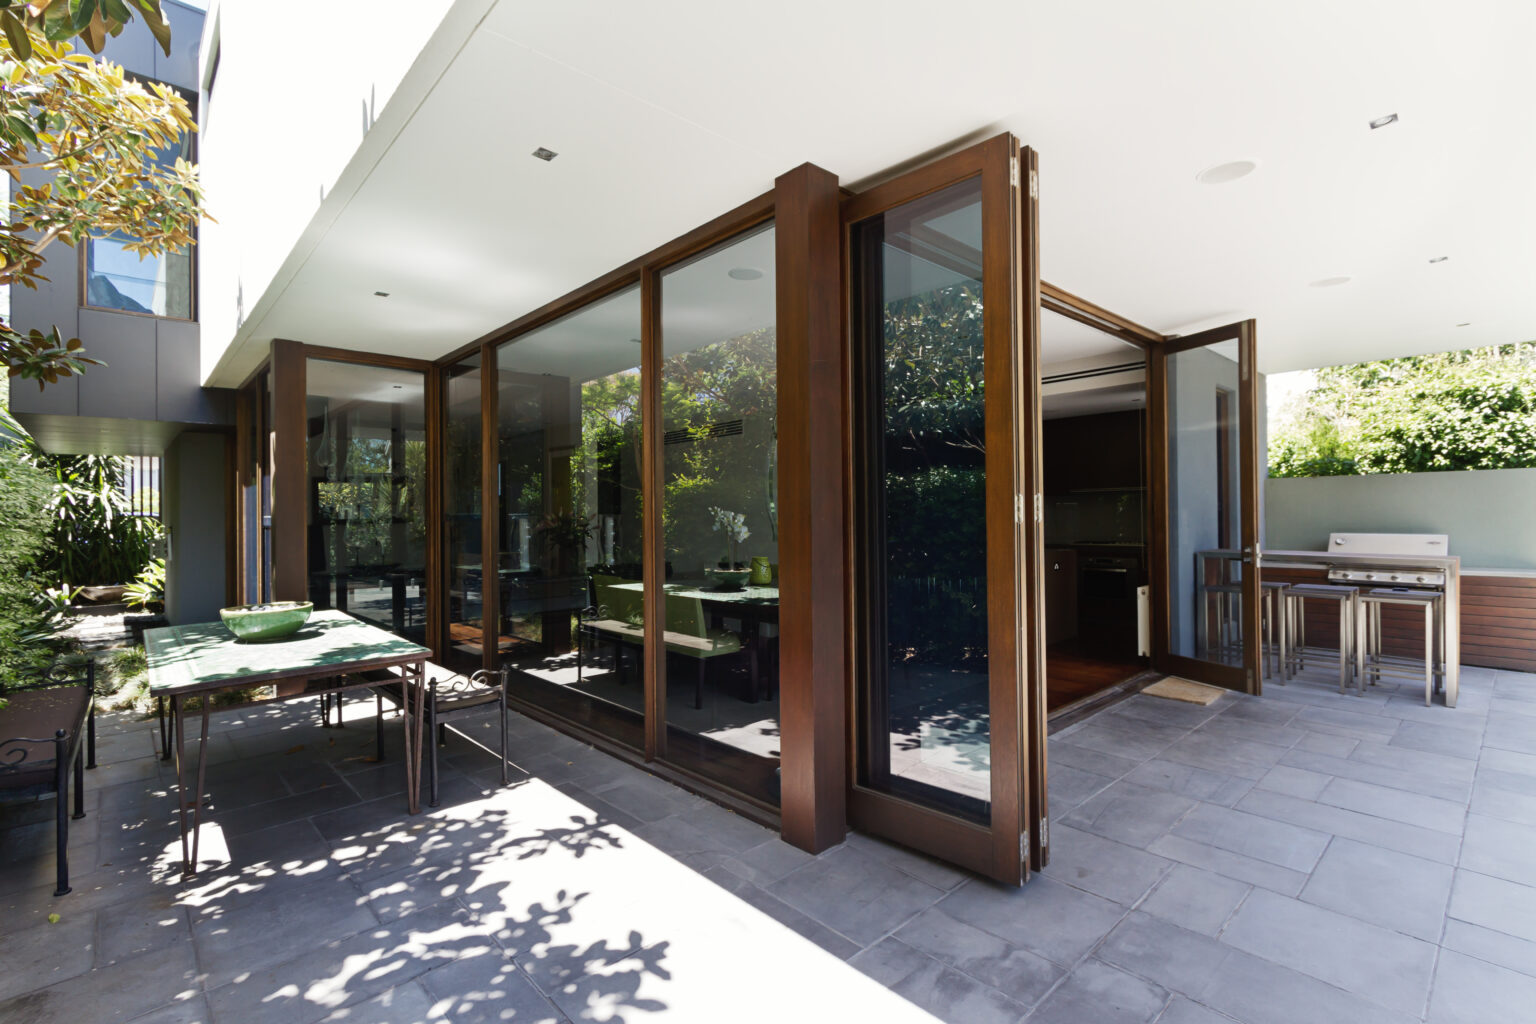 Slide Doors Presenting Opening Home To Outdoor Area